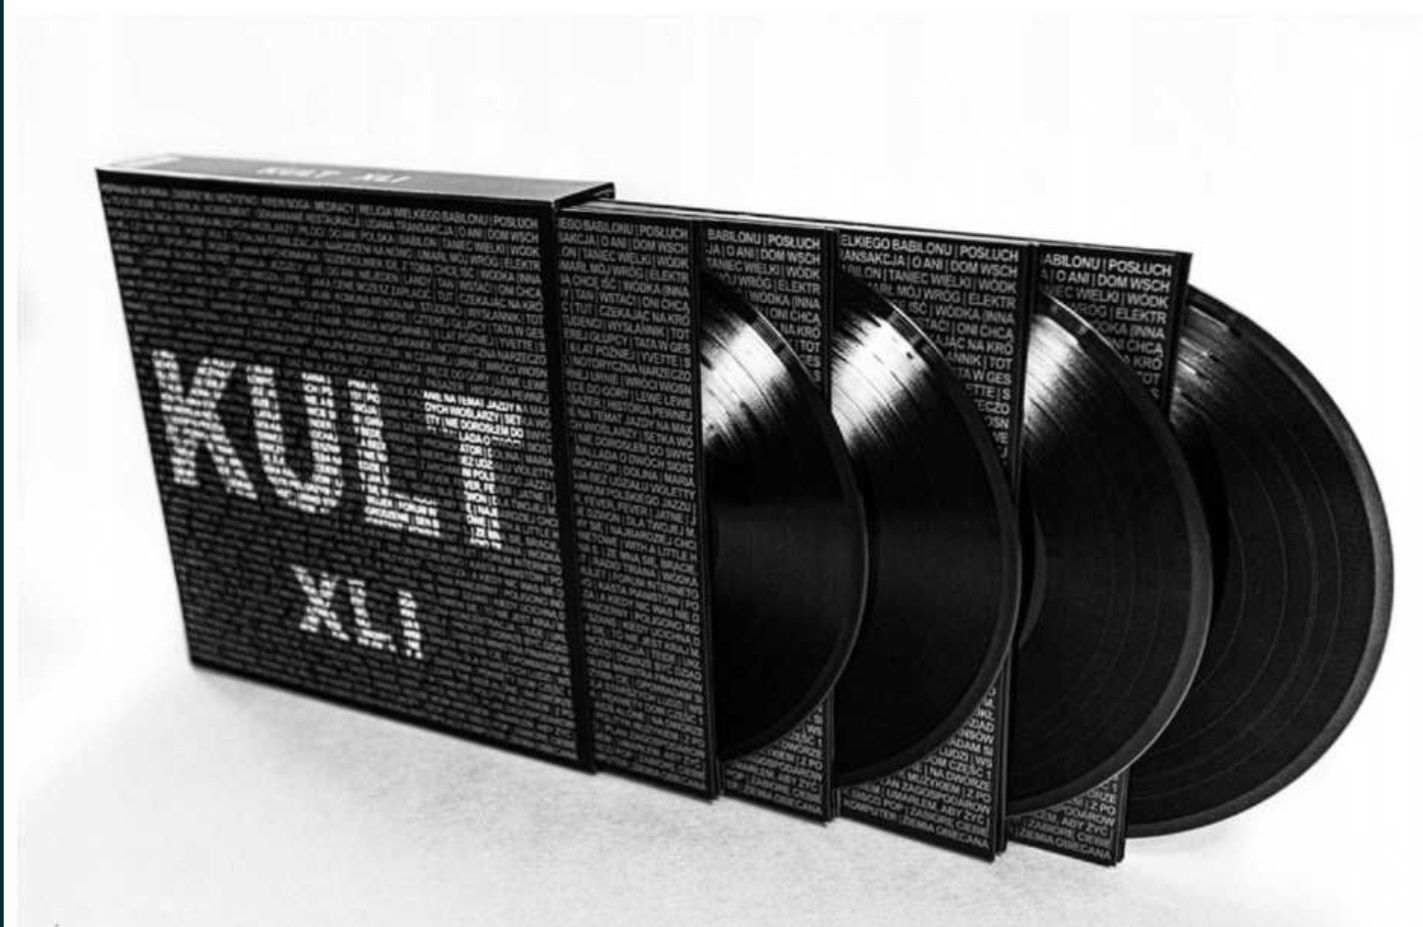 Kult XLI Album kompletny 4 płyty z zdjęciami